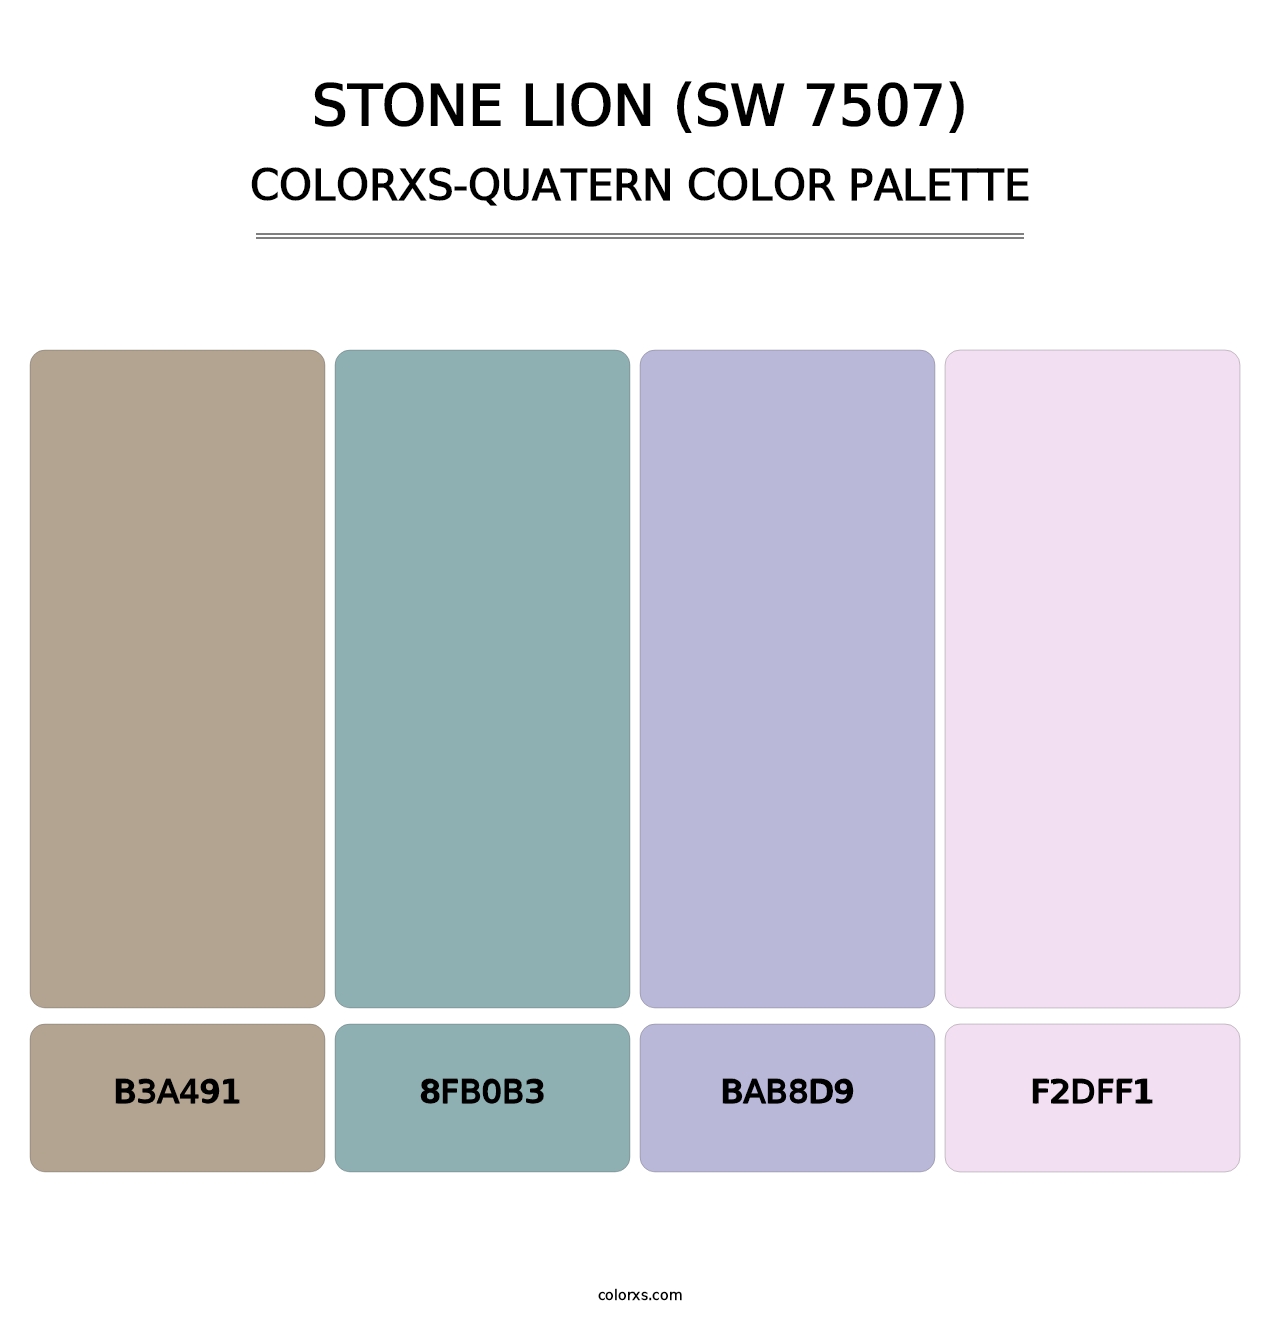 Stone Lion (SW 7507) - Colorxs Quatern Palette